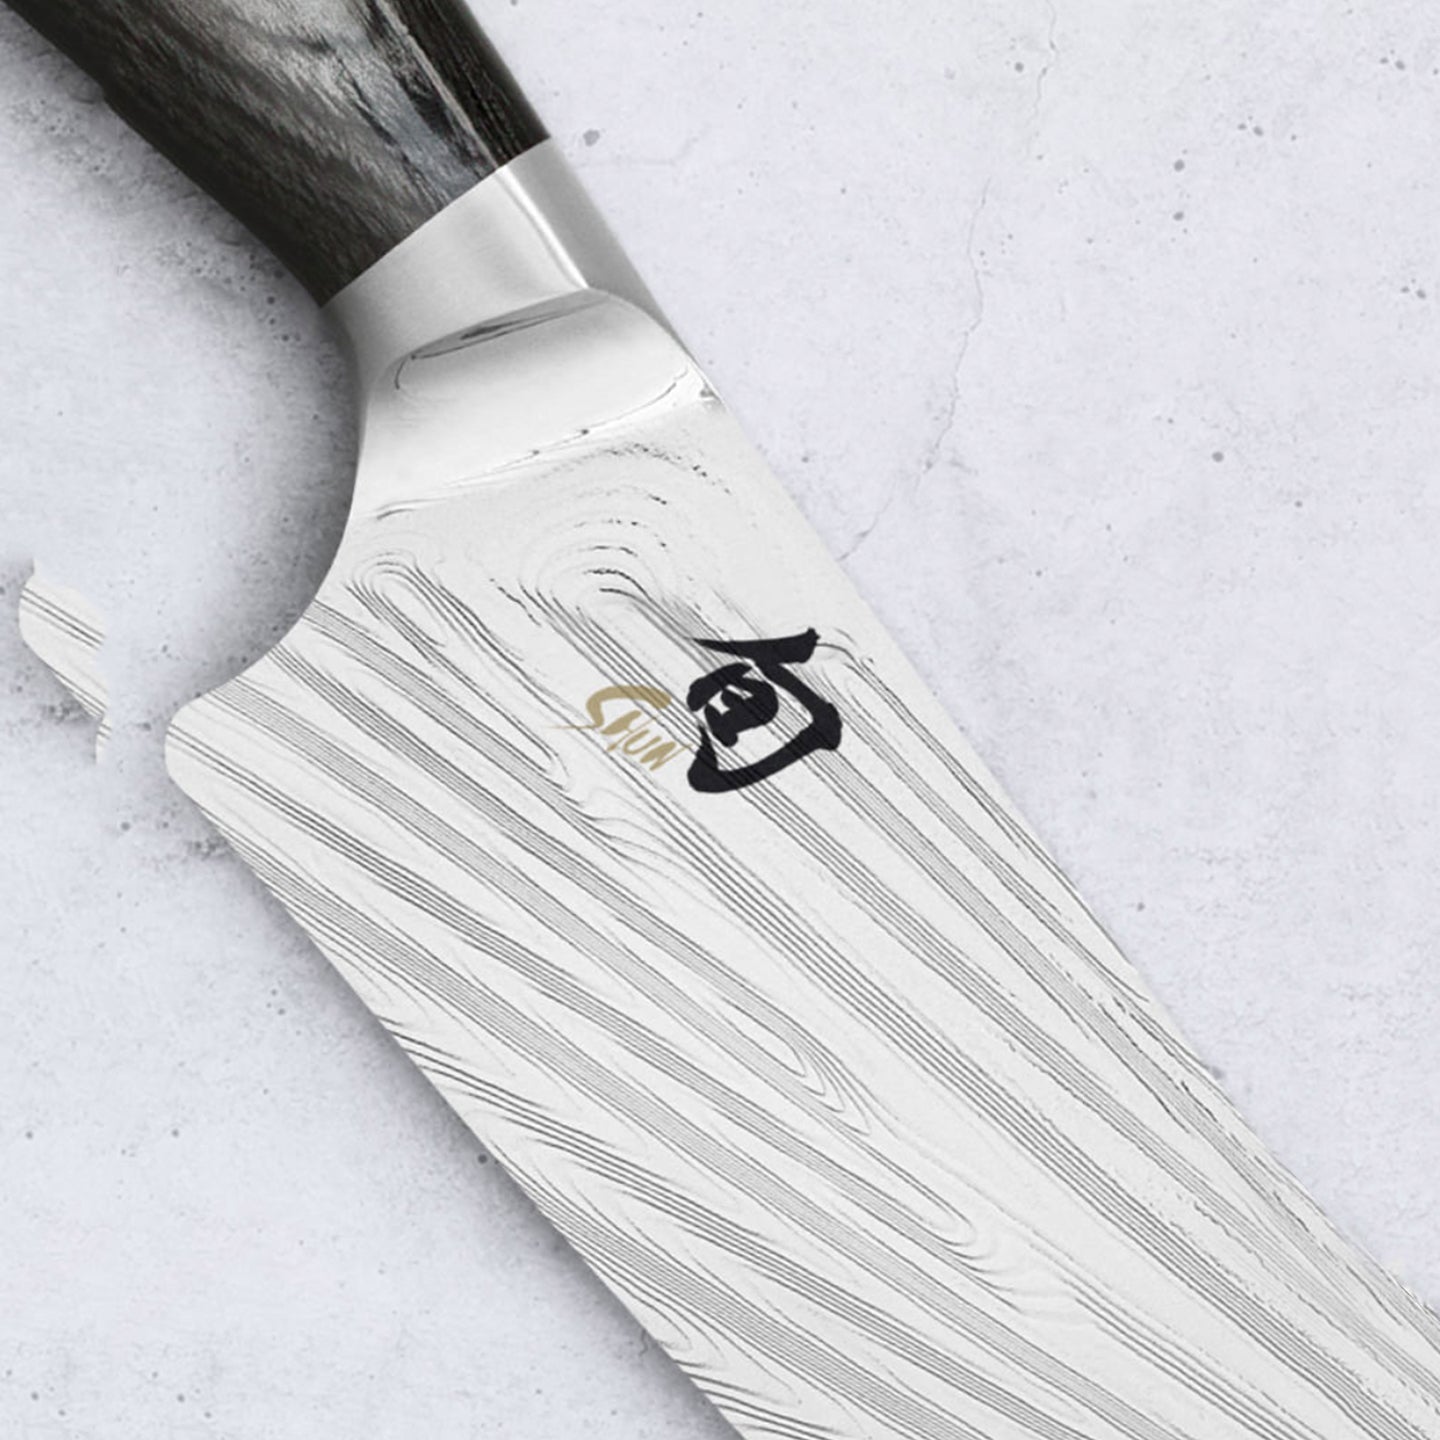 Kai Shun Nagare Utility Knife / 15cm